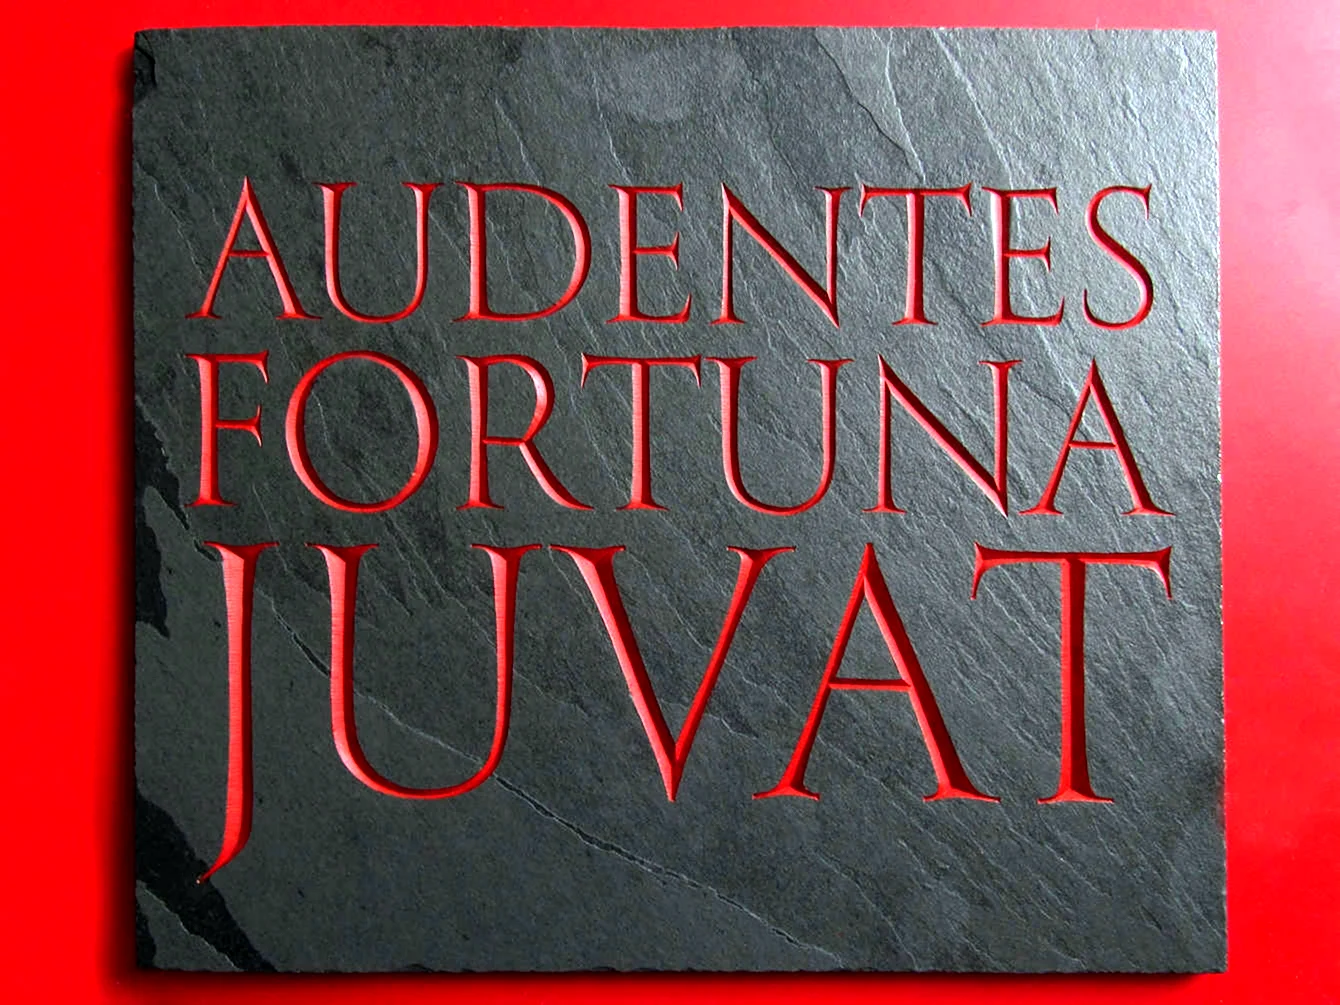 Audentes Fortuna Juvat